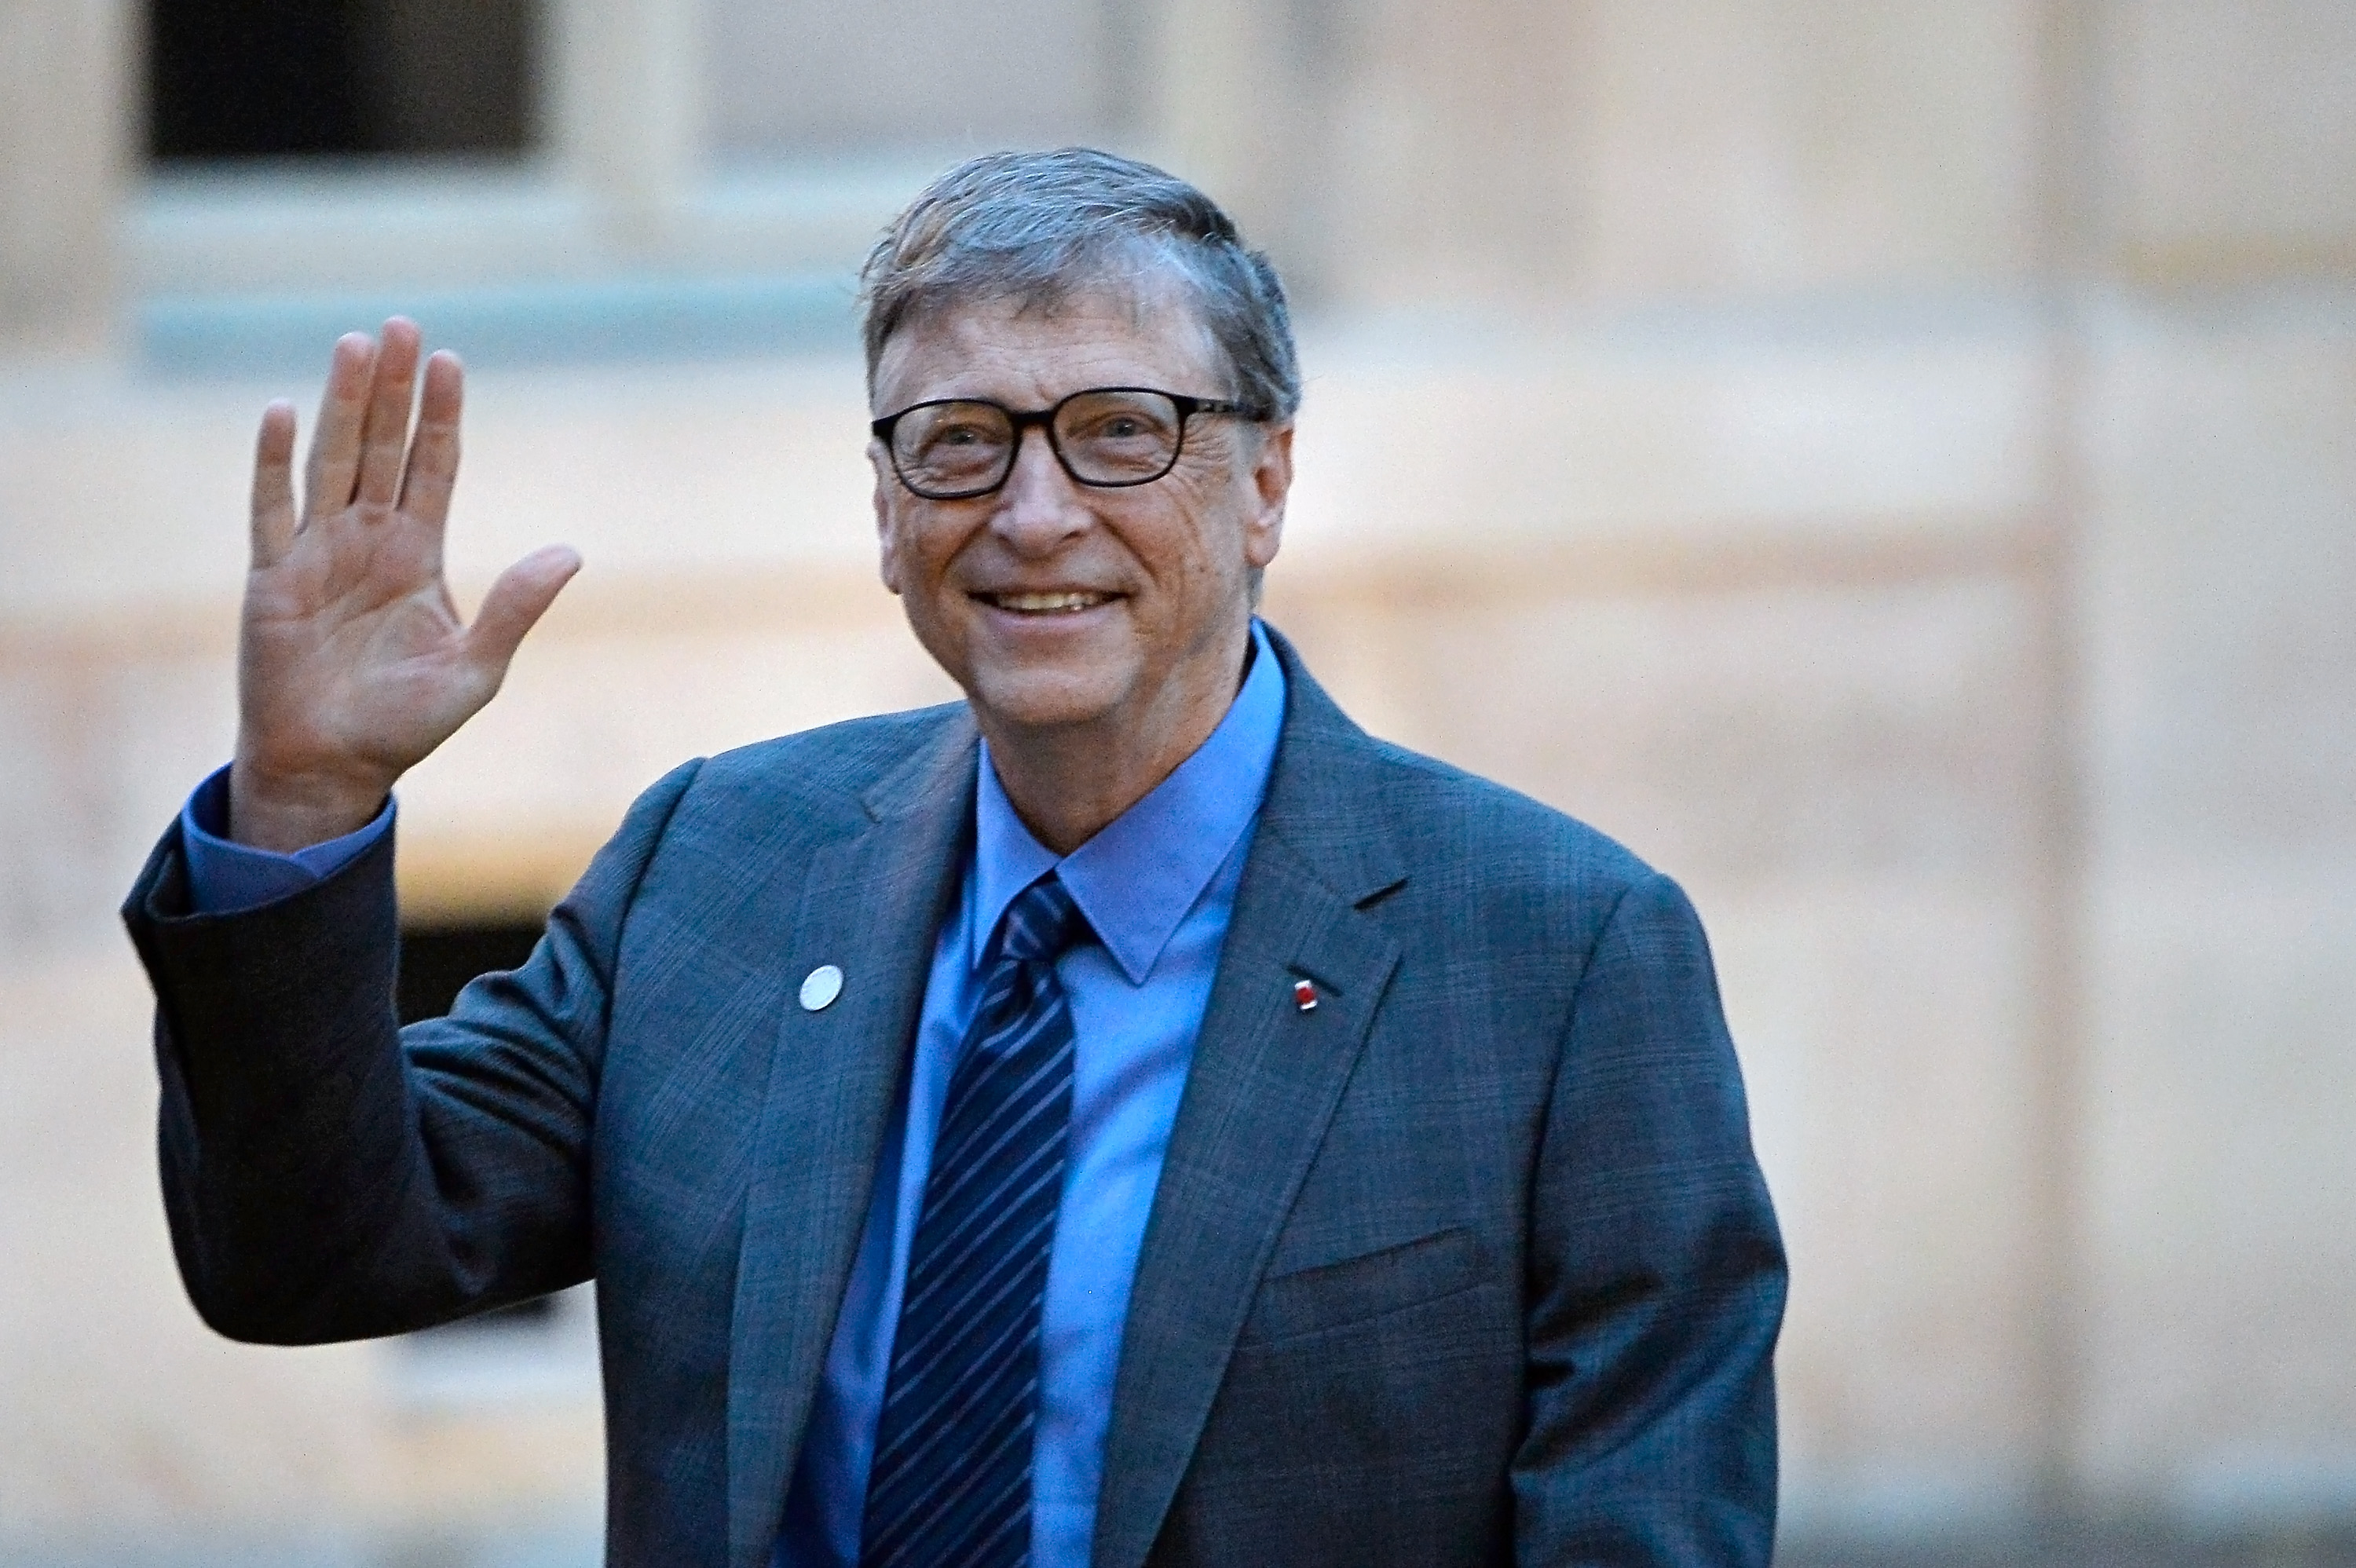   11 Bài học quý giá về cuộc sống từ tỷ phú Bill Gates giúp chúng ta thành công hơn (Ảnh minh họa)  